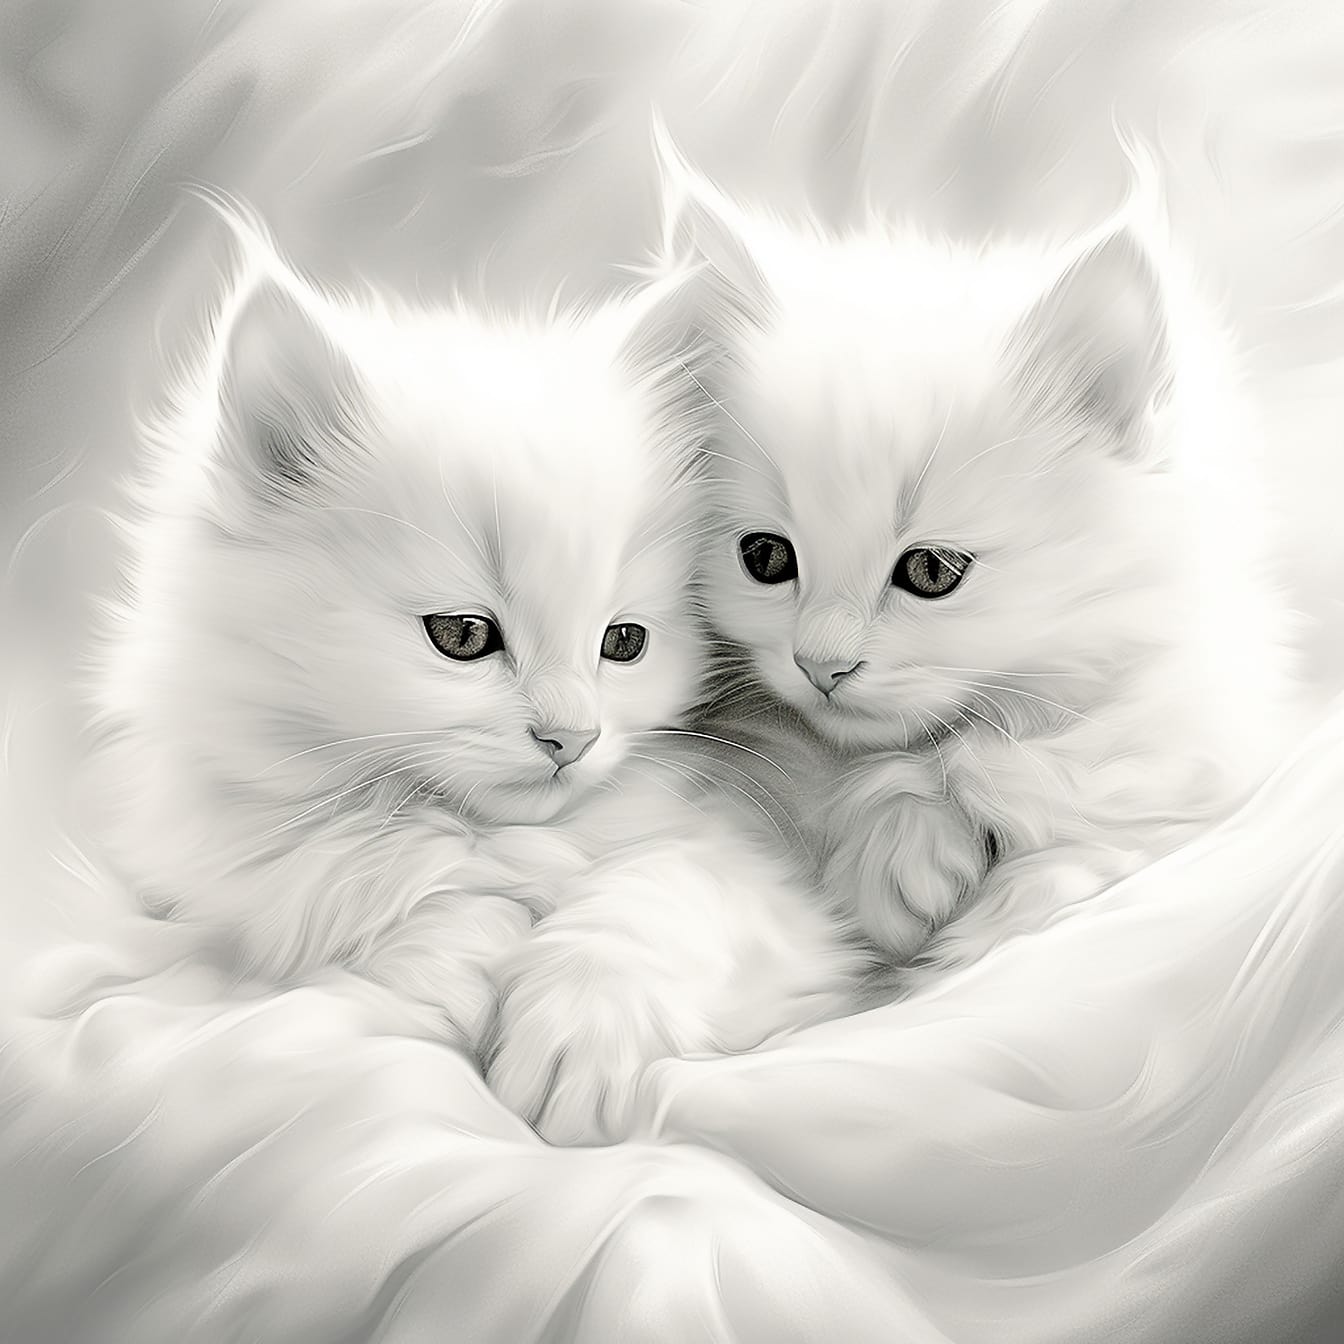 Монохромная иллюстрация пушистых белых котят крупным планом